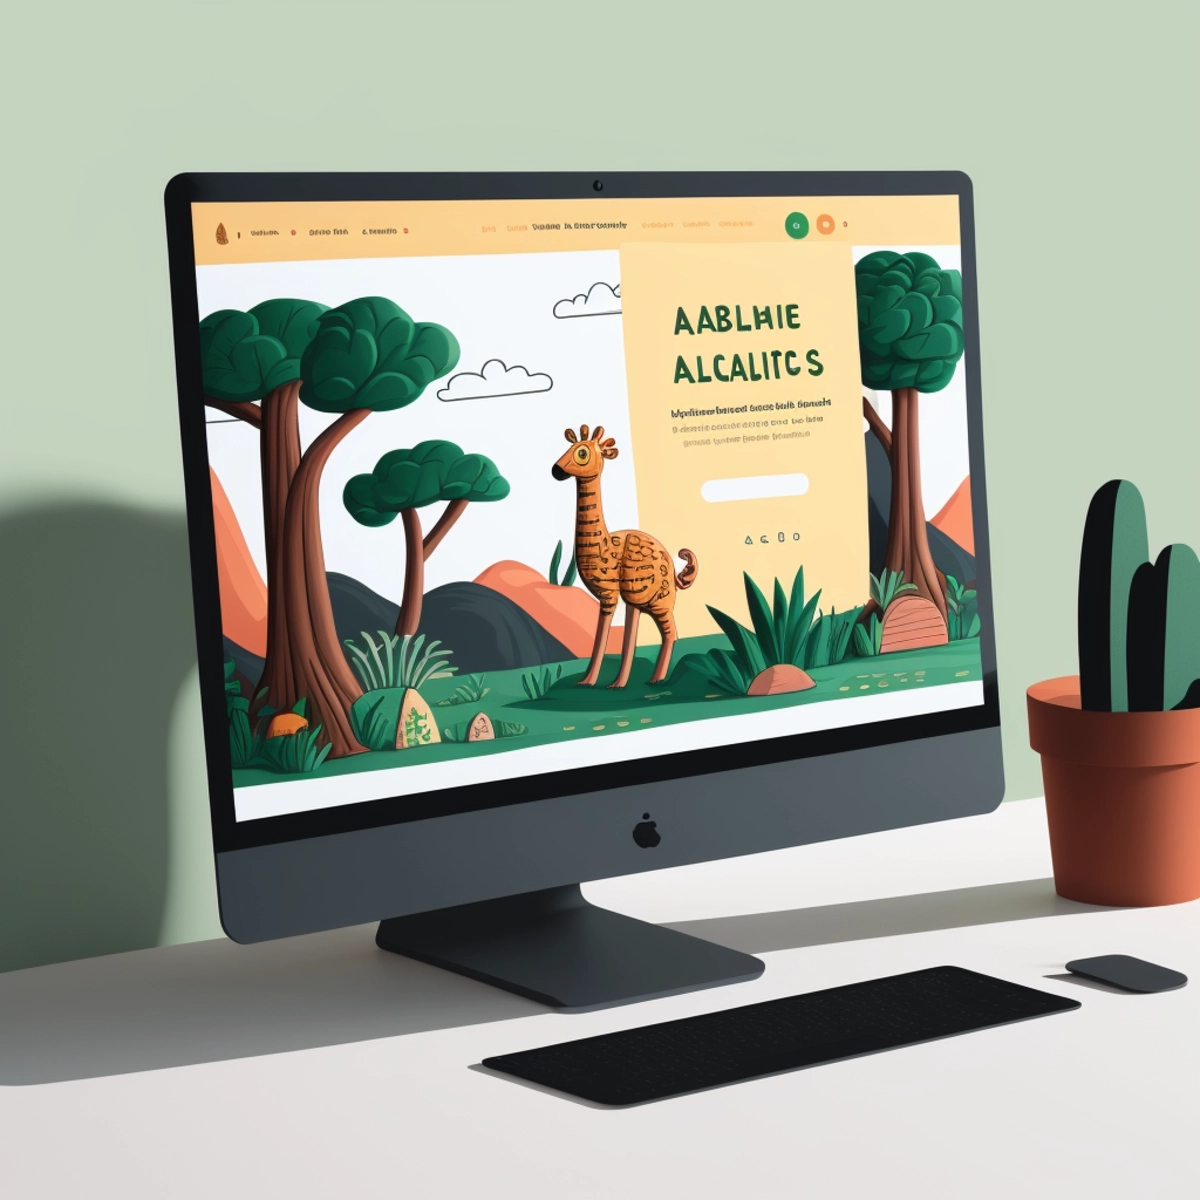 Un sito web educativo su monitor, che incorpora illustrazioni giocose